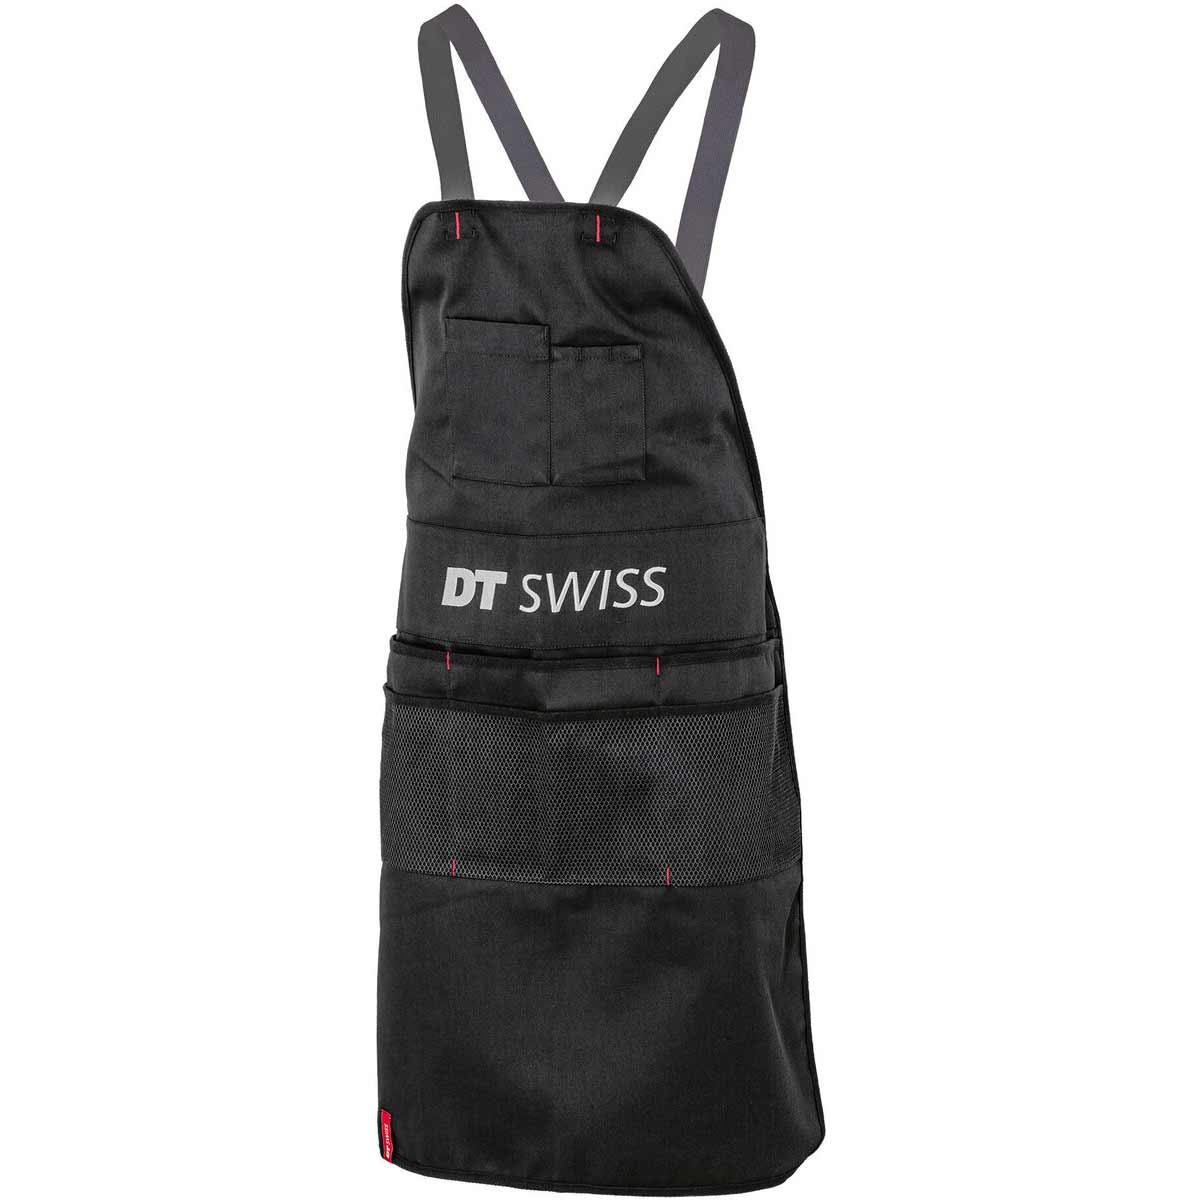 DT Swiss Shop Apron